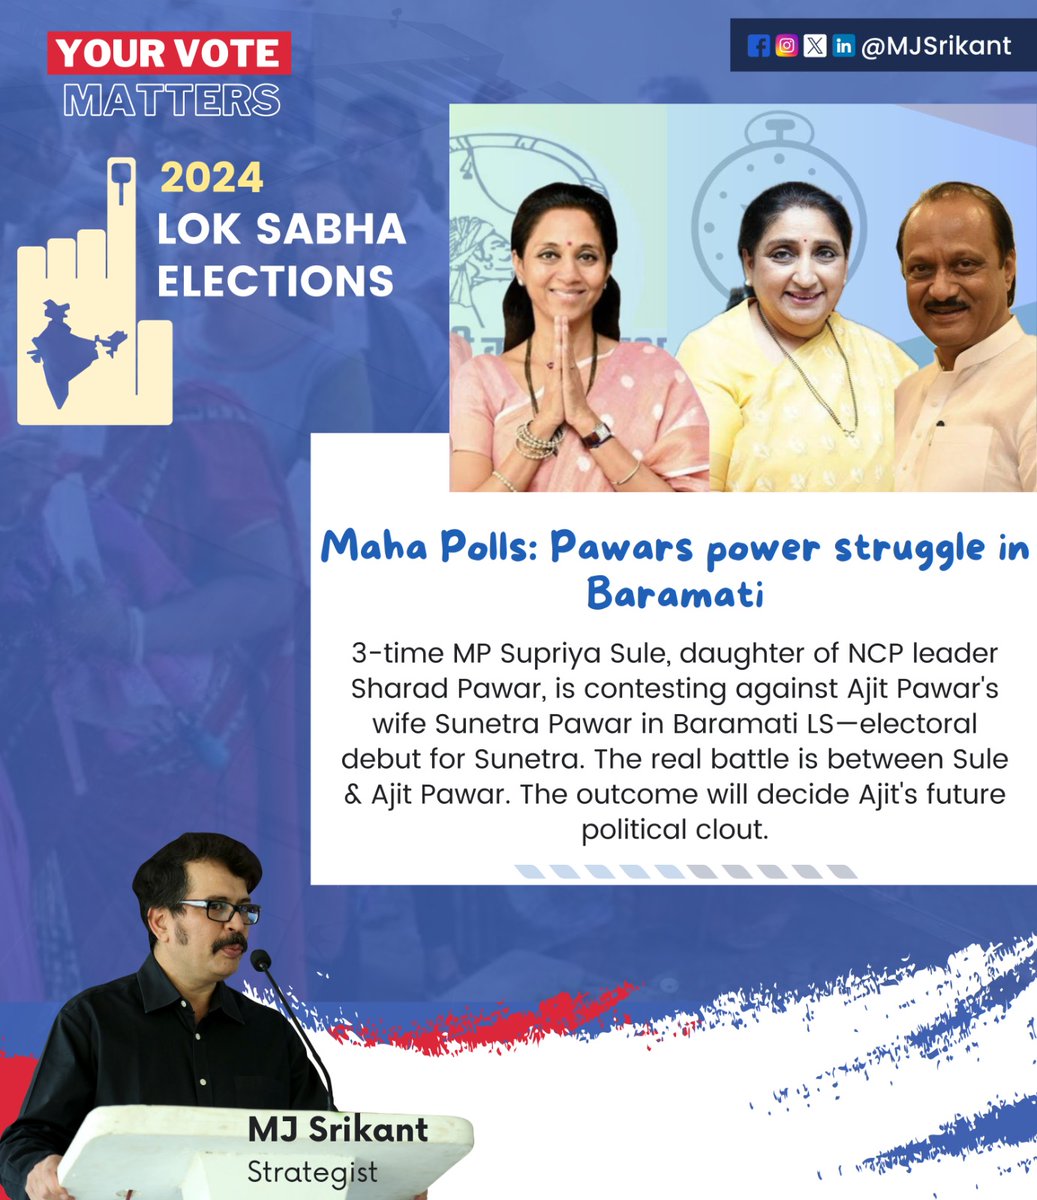 Maha Polls: Pawars power struggle in Baramati

#MahaPolls #Baramati #PowerStruggle #SupriyaSule #SharadPawar #AjitPawar #SunetraPawar #ElectoralDebut #PoliticalClout